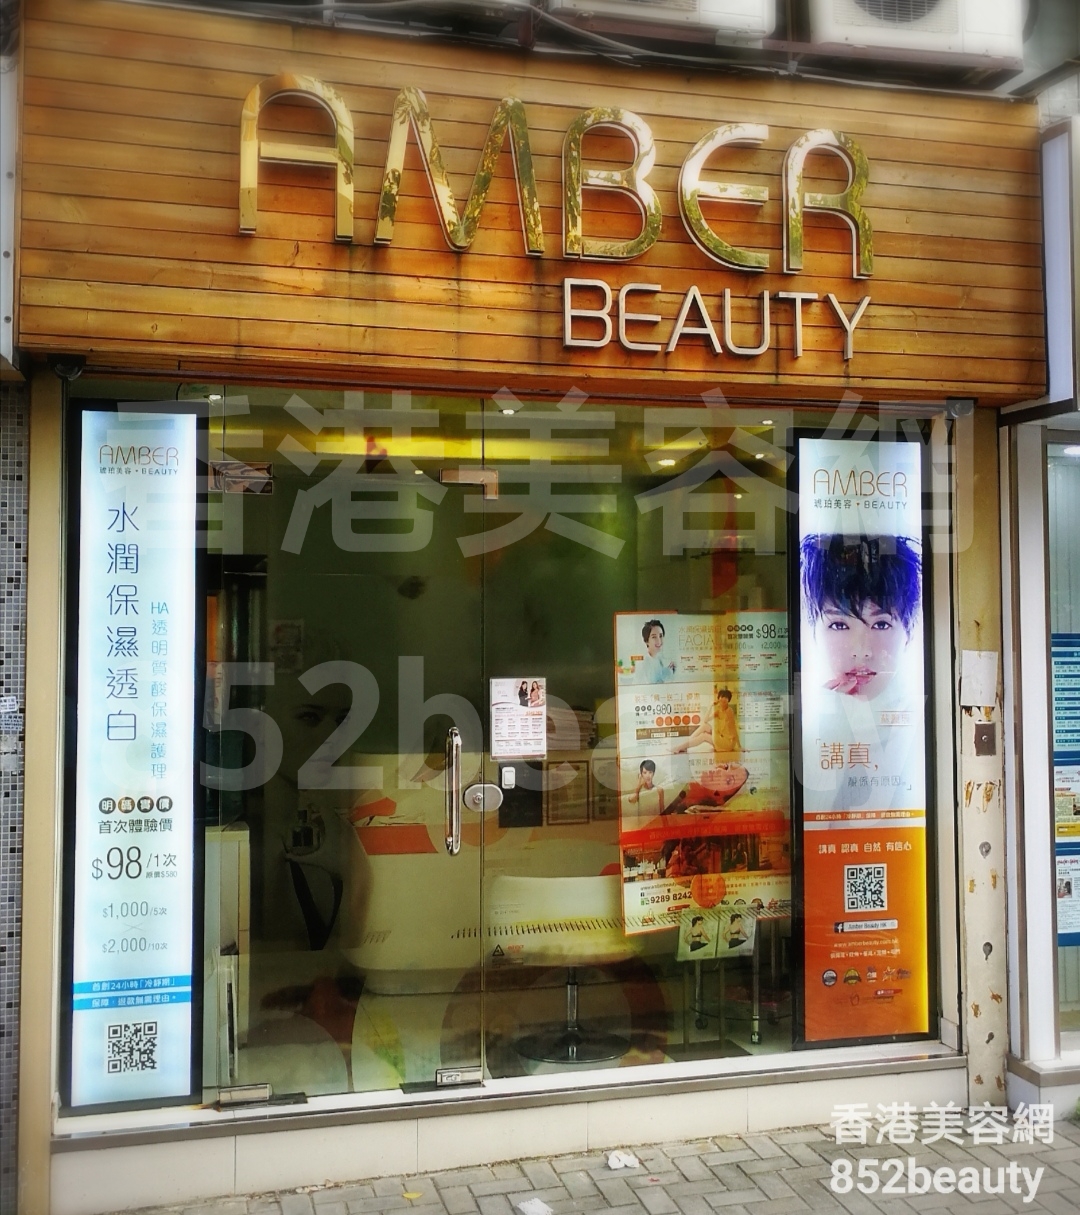 香港美容網 Hong Kong Beauty Salon 美容院 / 美容師: 琥珀美容 Amber Beauty (屯門嘉喜利大廈店)